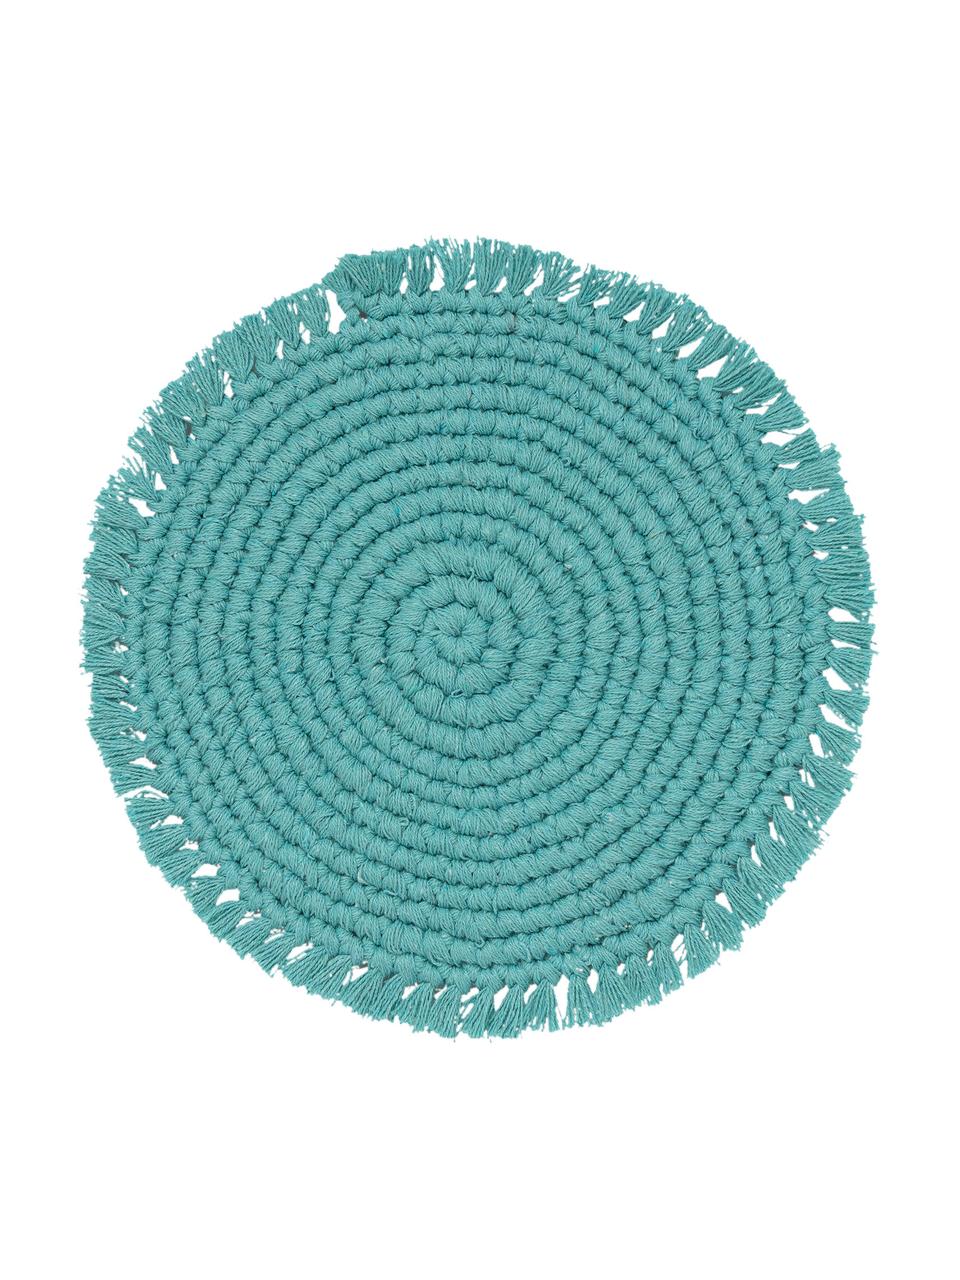 Okrągła podkładka z bawełny z frędzlami Vera, 100% bawełna, Turkusowy, Ø 38 cm